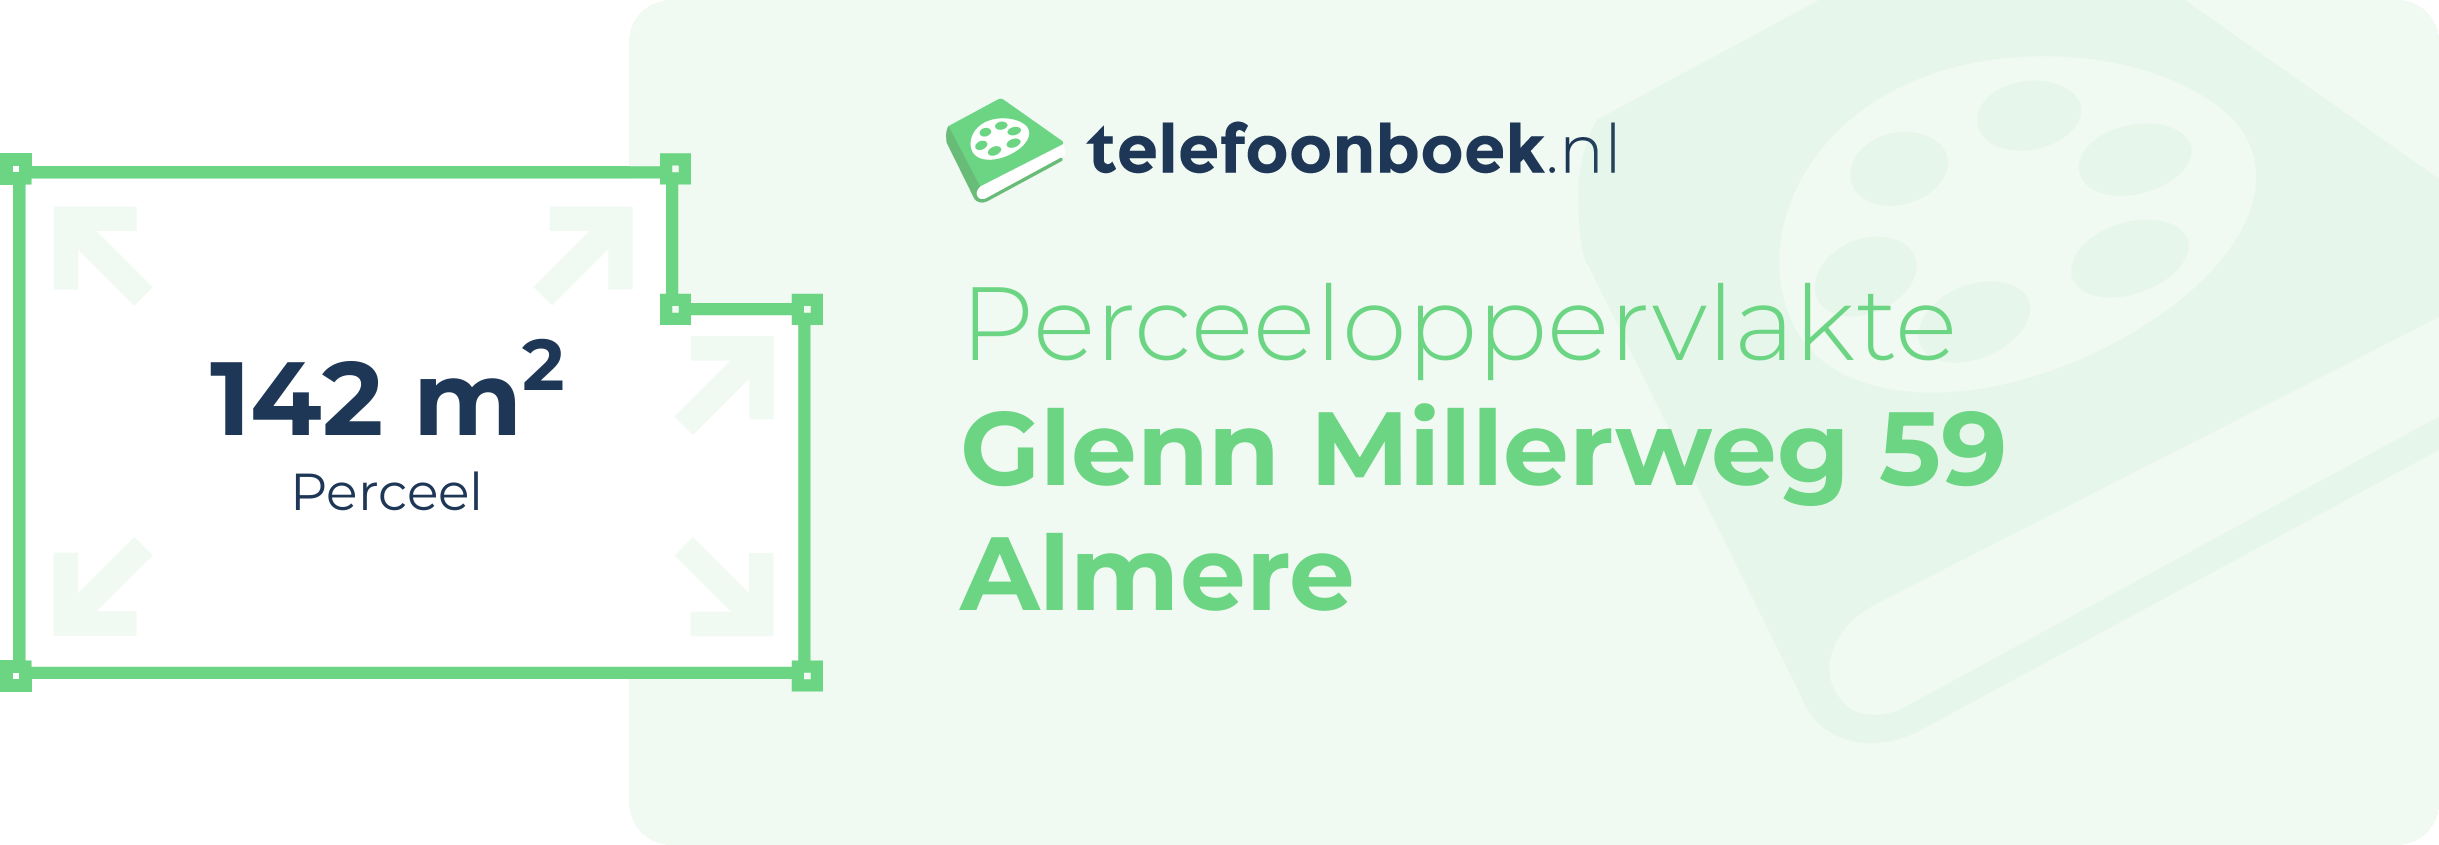 Perceeloppervlakte Glenn Millerweg 59 Almere